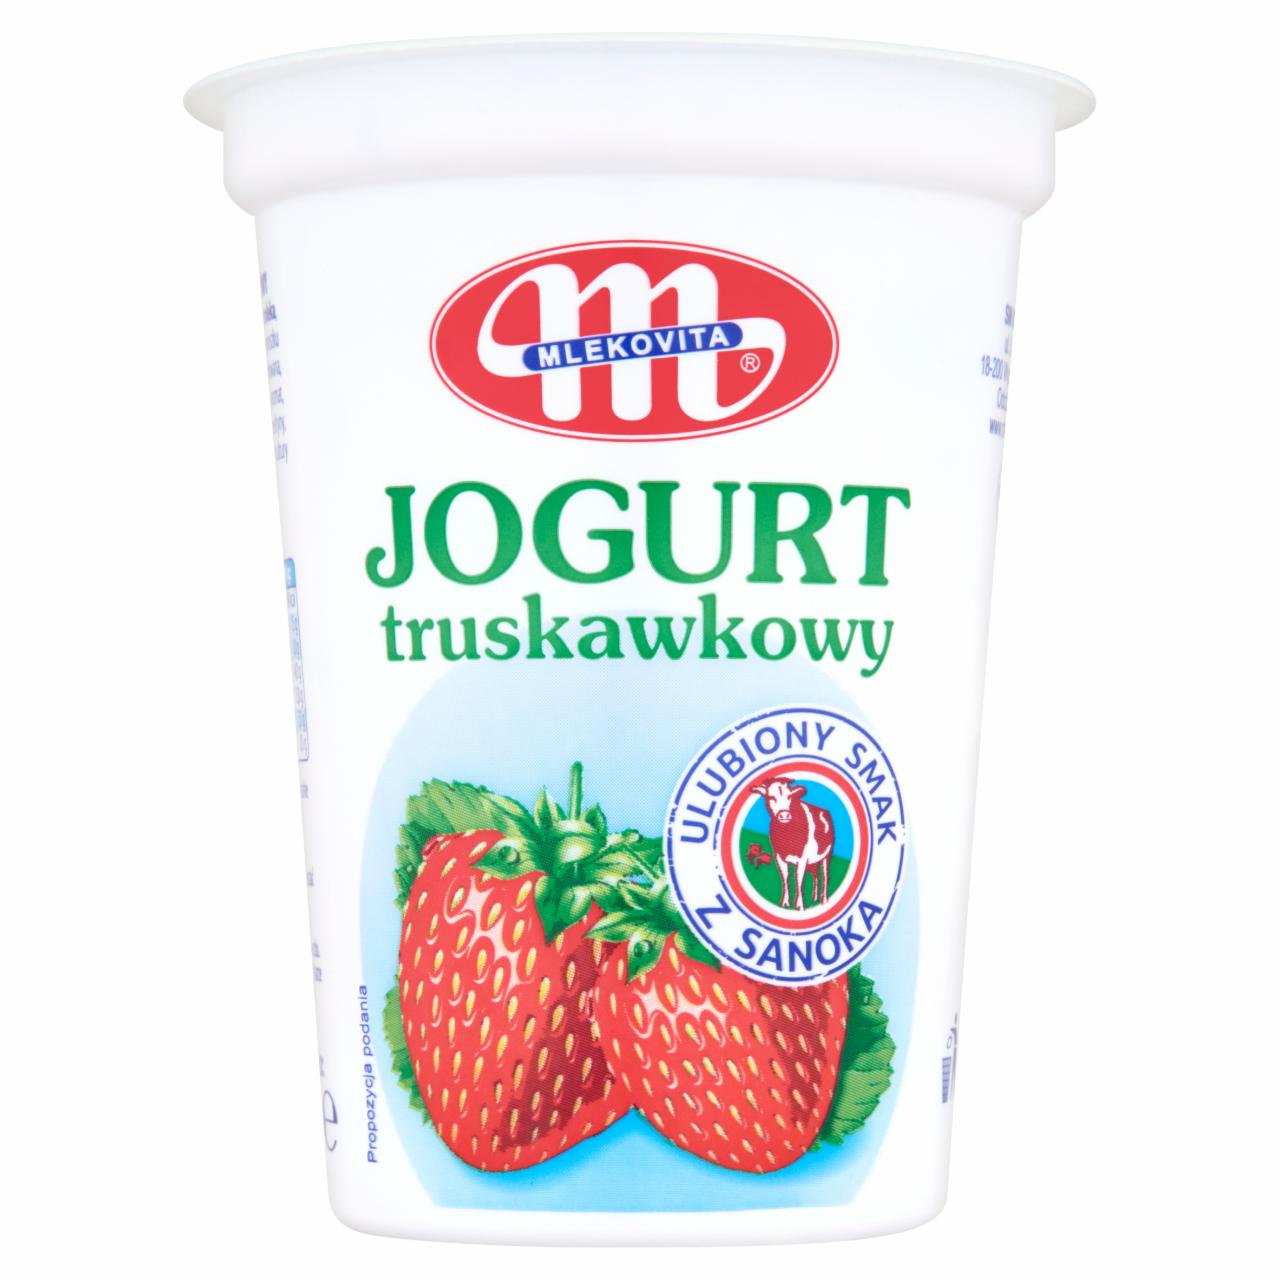 Zdjęcia - Jogurt truskawkowy 400 g Mlekovita